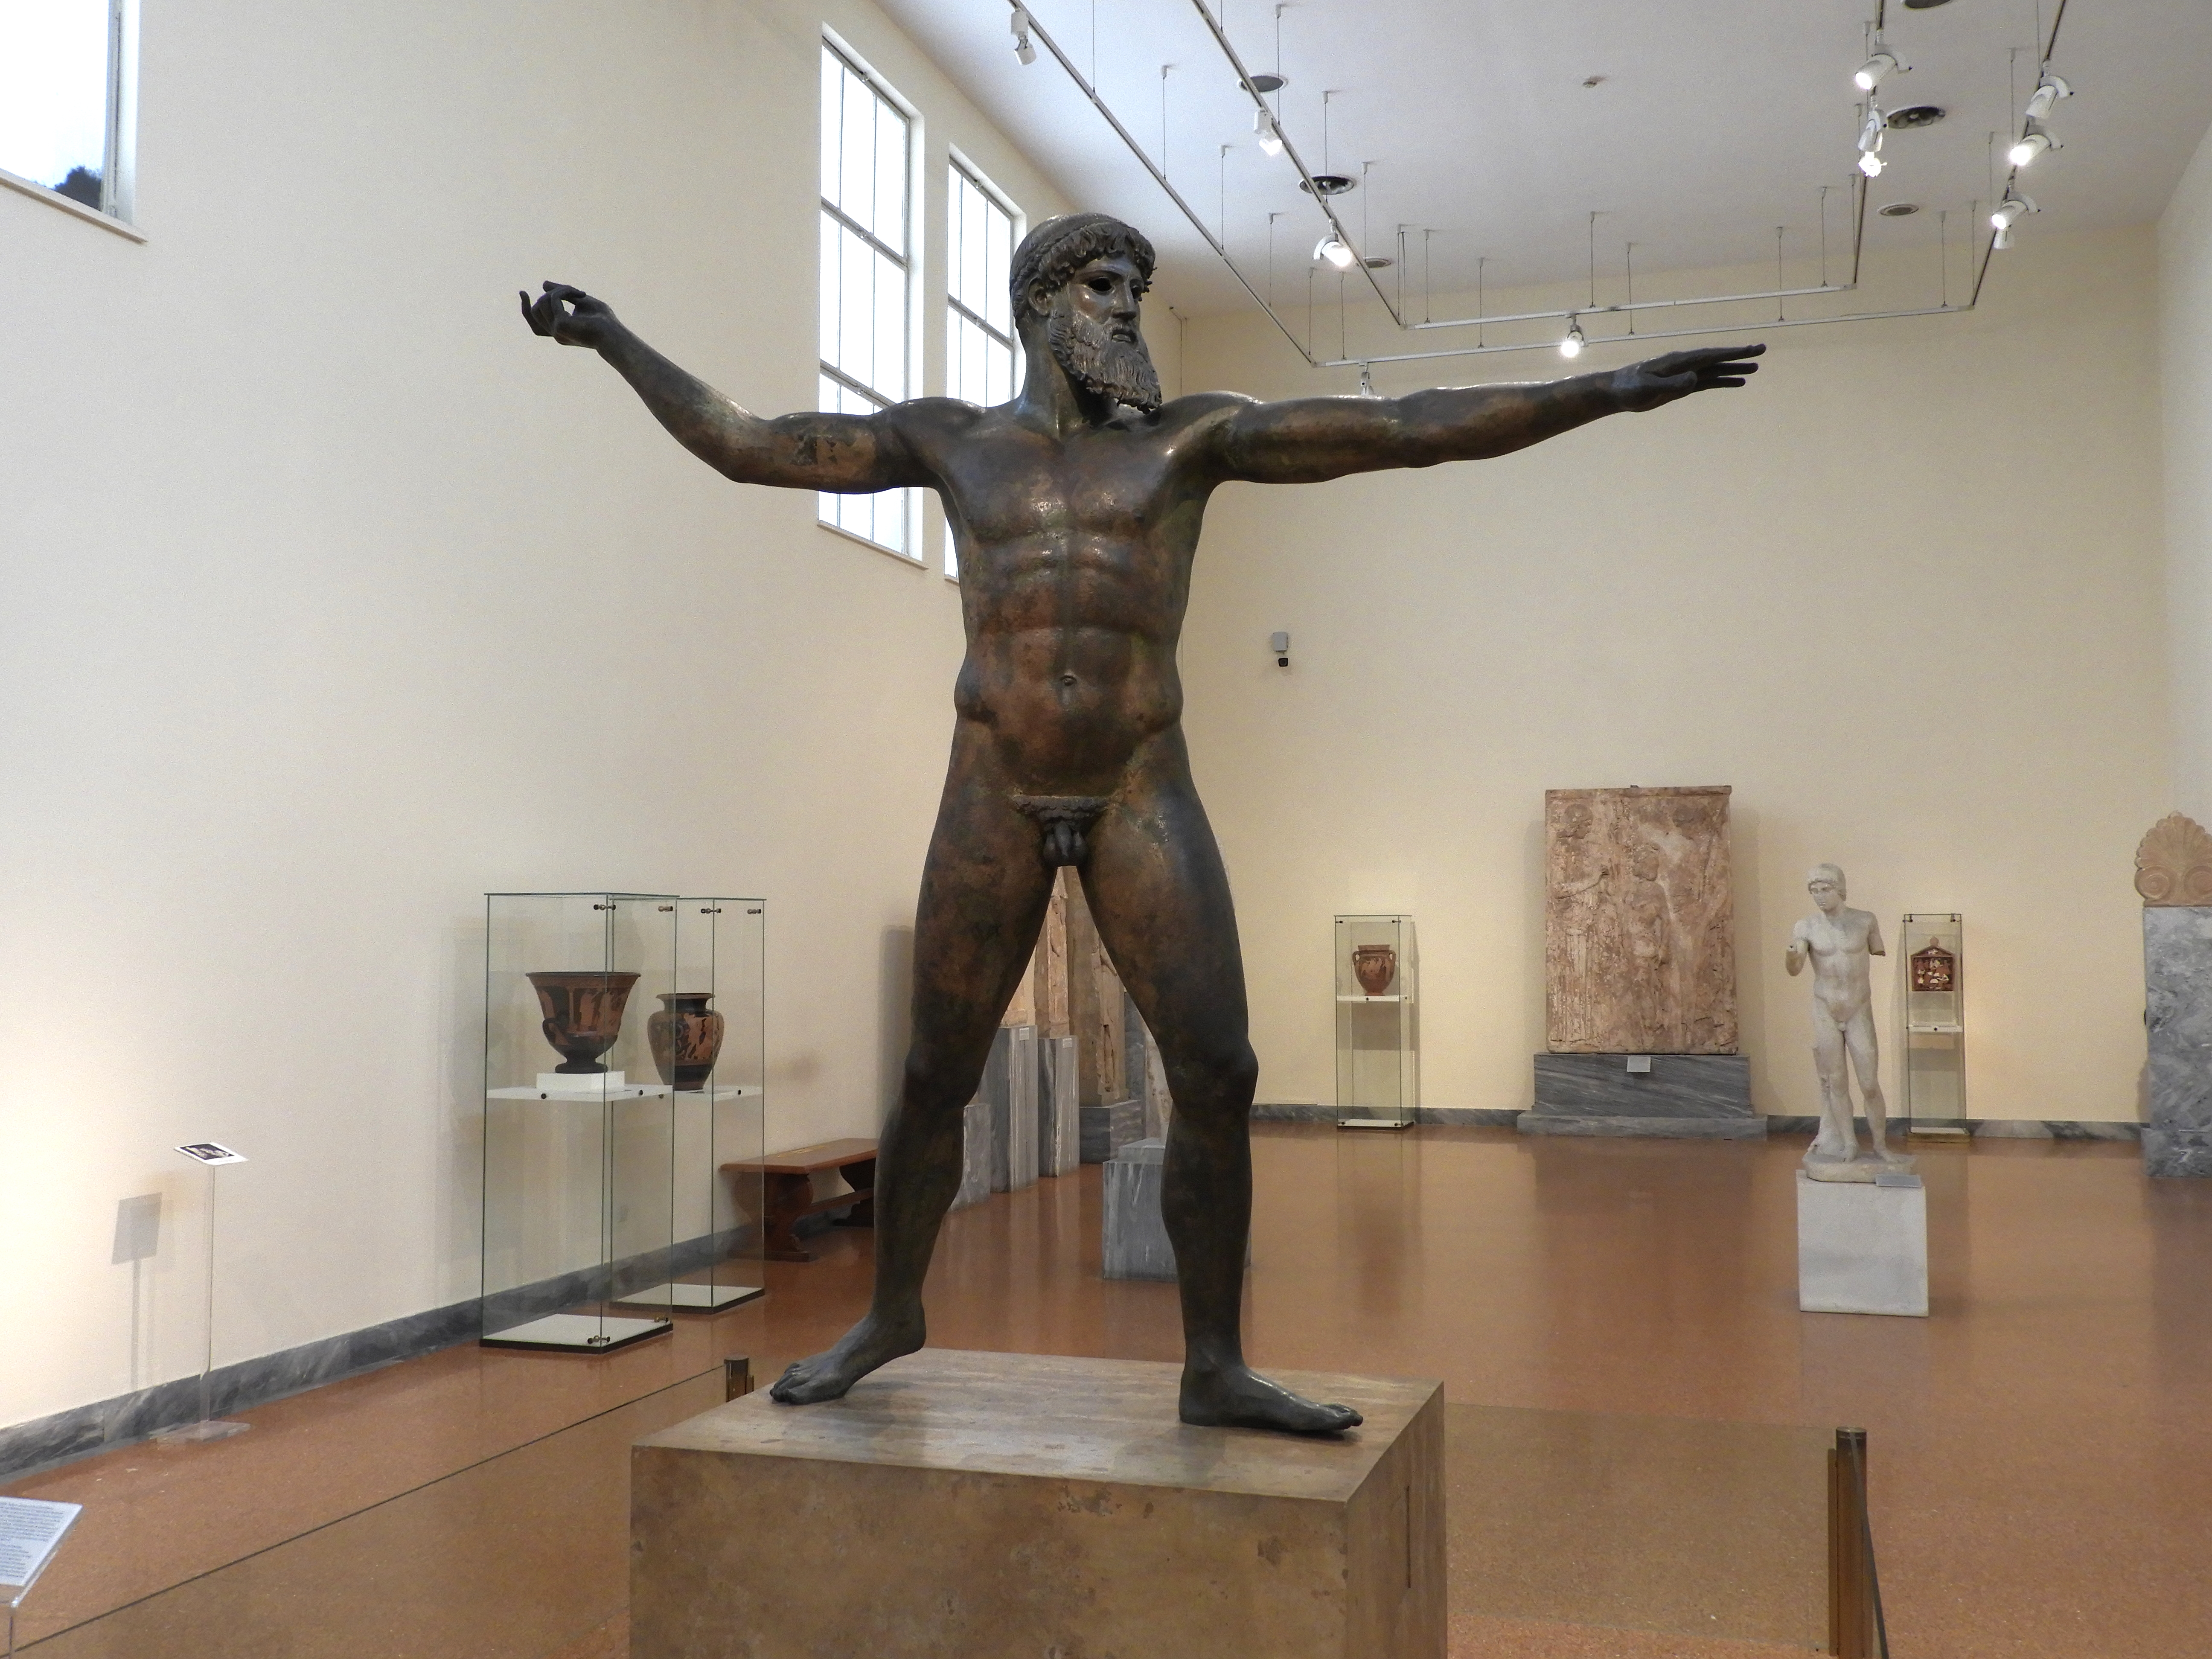 Je nachdem, ob diese Bronzestatue einen Blitz oder einen Dreizack in der Hand hält, handelt es sich dabei um Zeus oder Poseidon [Foto: Kevin Reese].